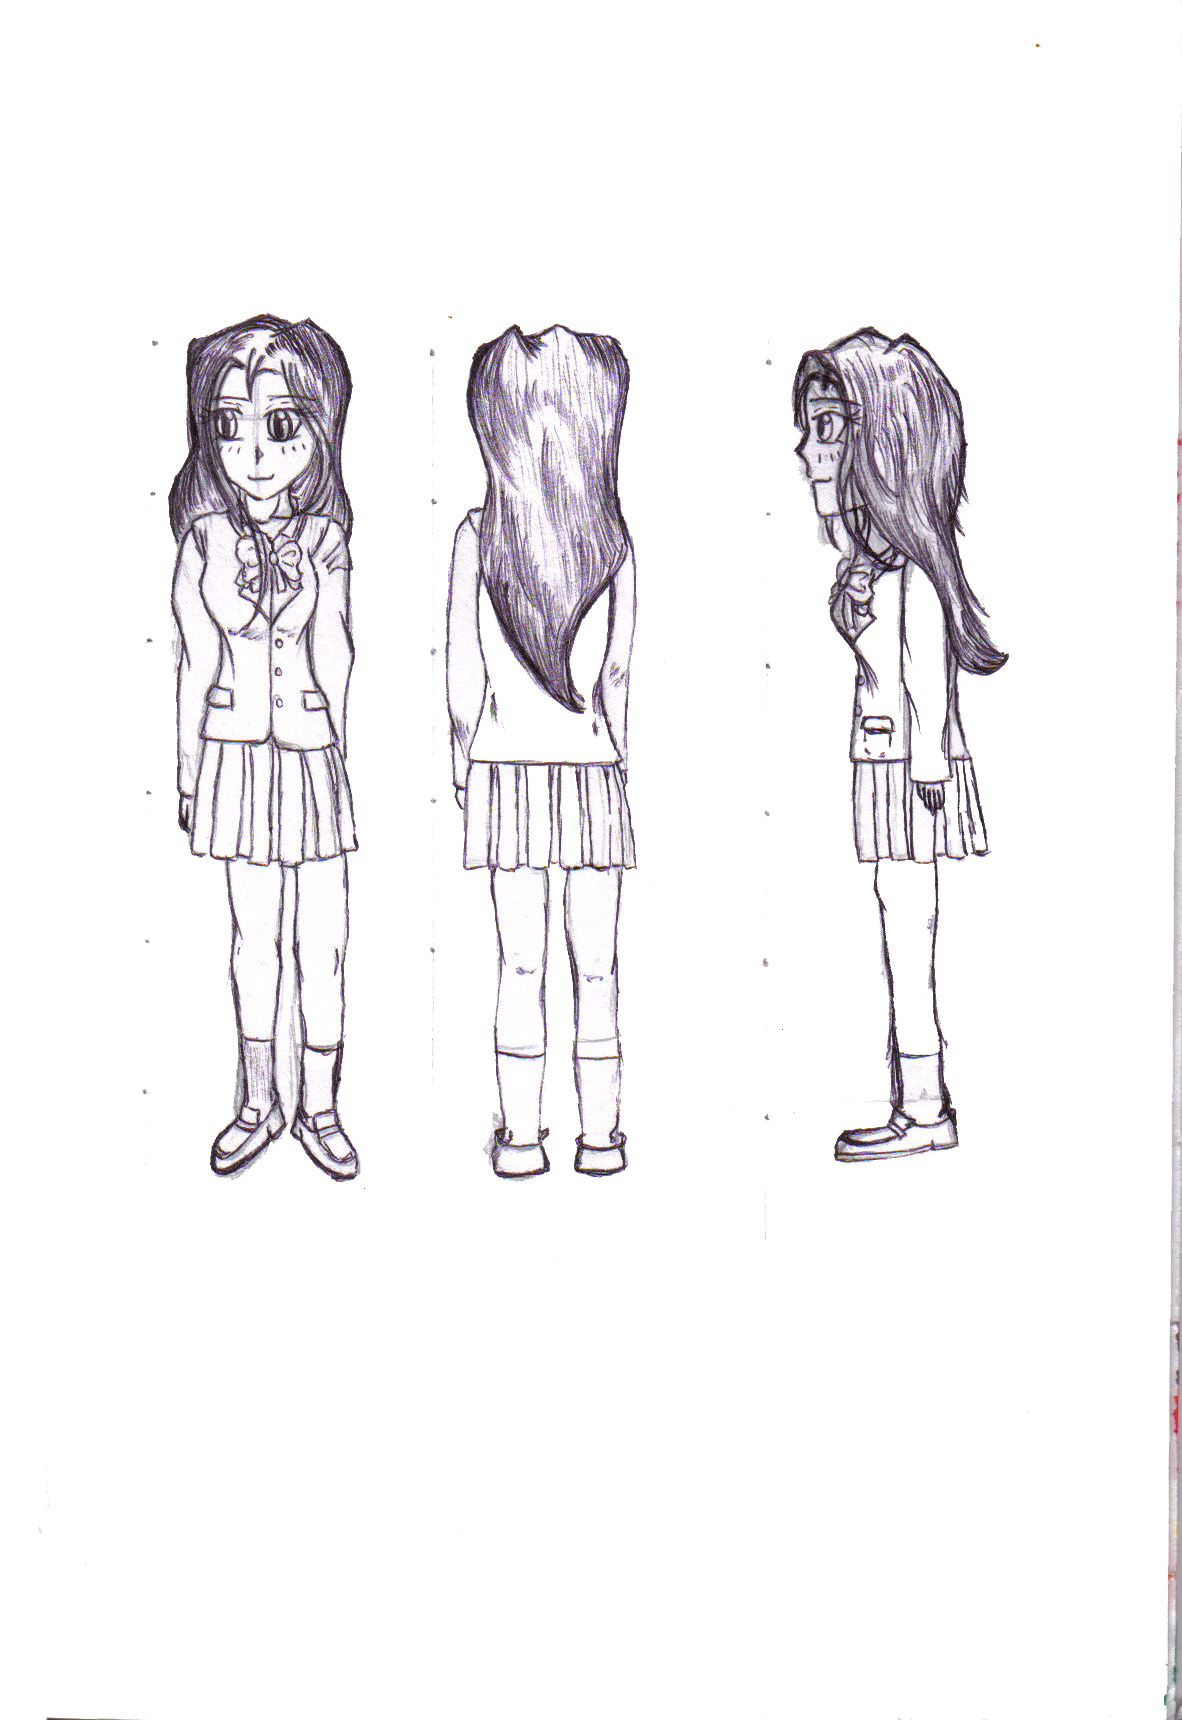 Schoolgirl Flaire by WintersxxPhoenix